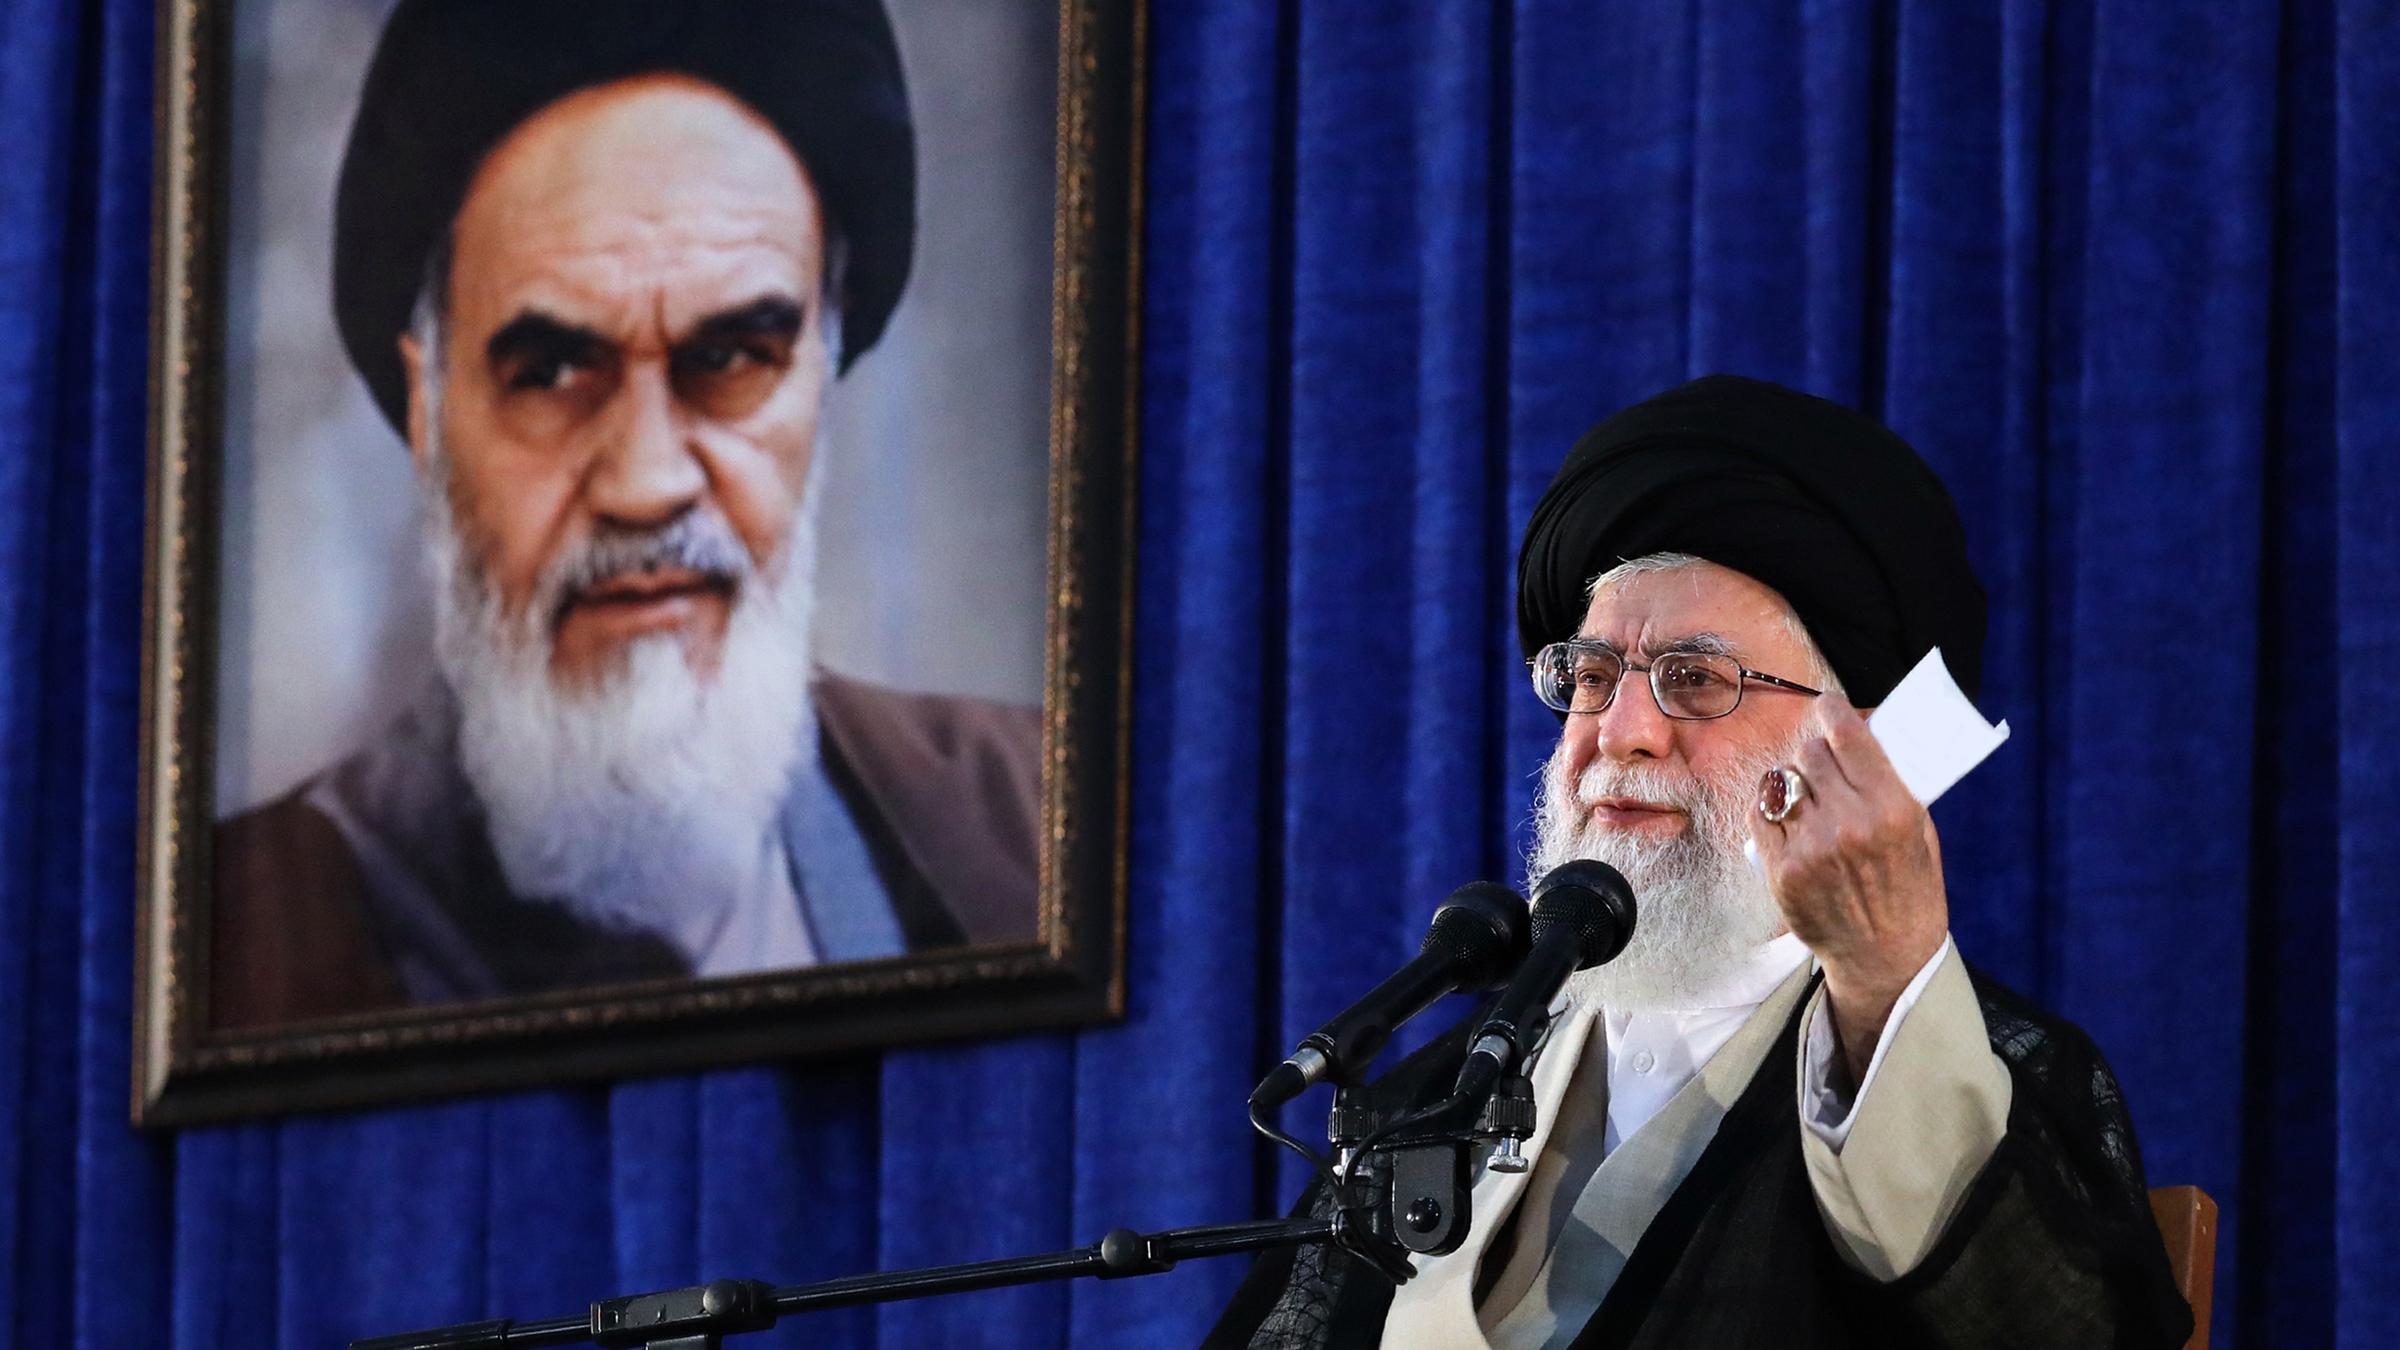 "Krisenherd Iran – Gottesstaat zwischen Macht und Ohnmacht": Ajatollah Ali Chamenei spricht in ein Mikrofon vor einem blauen Vorhang.